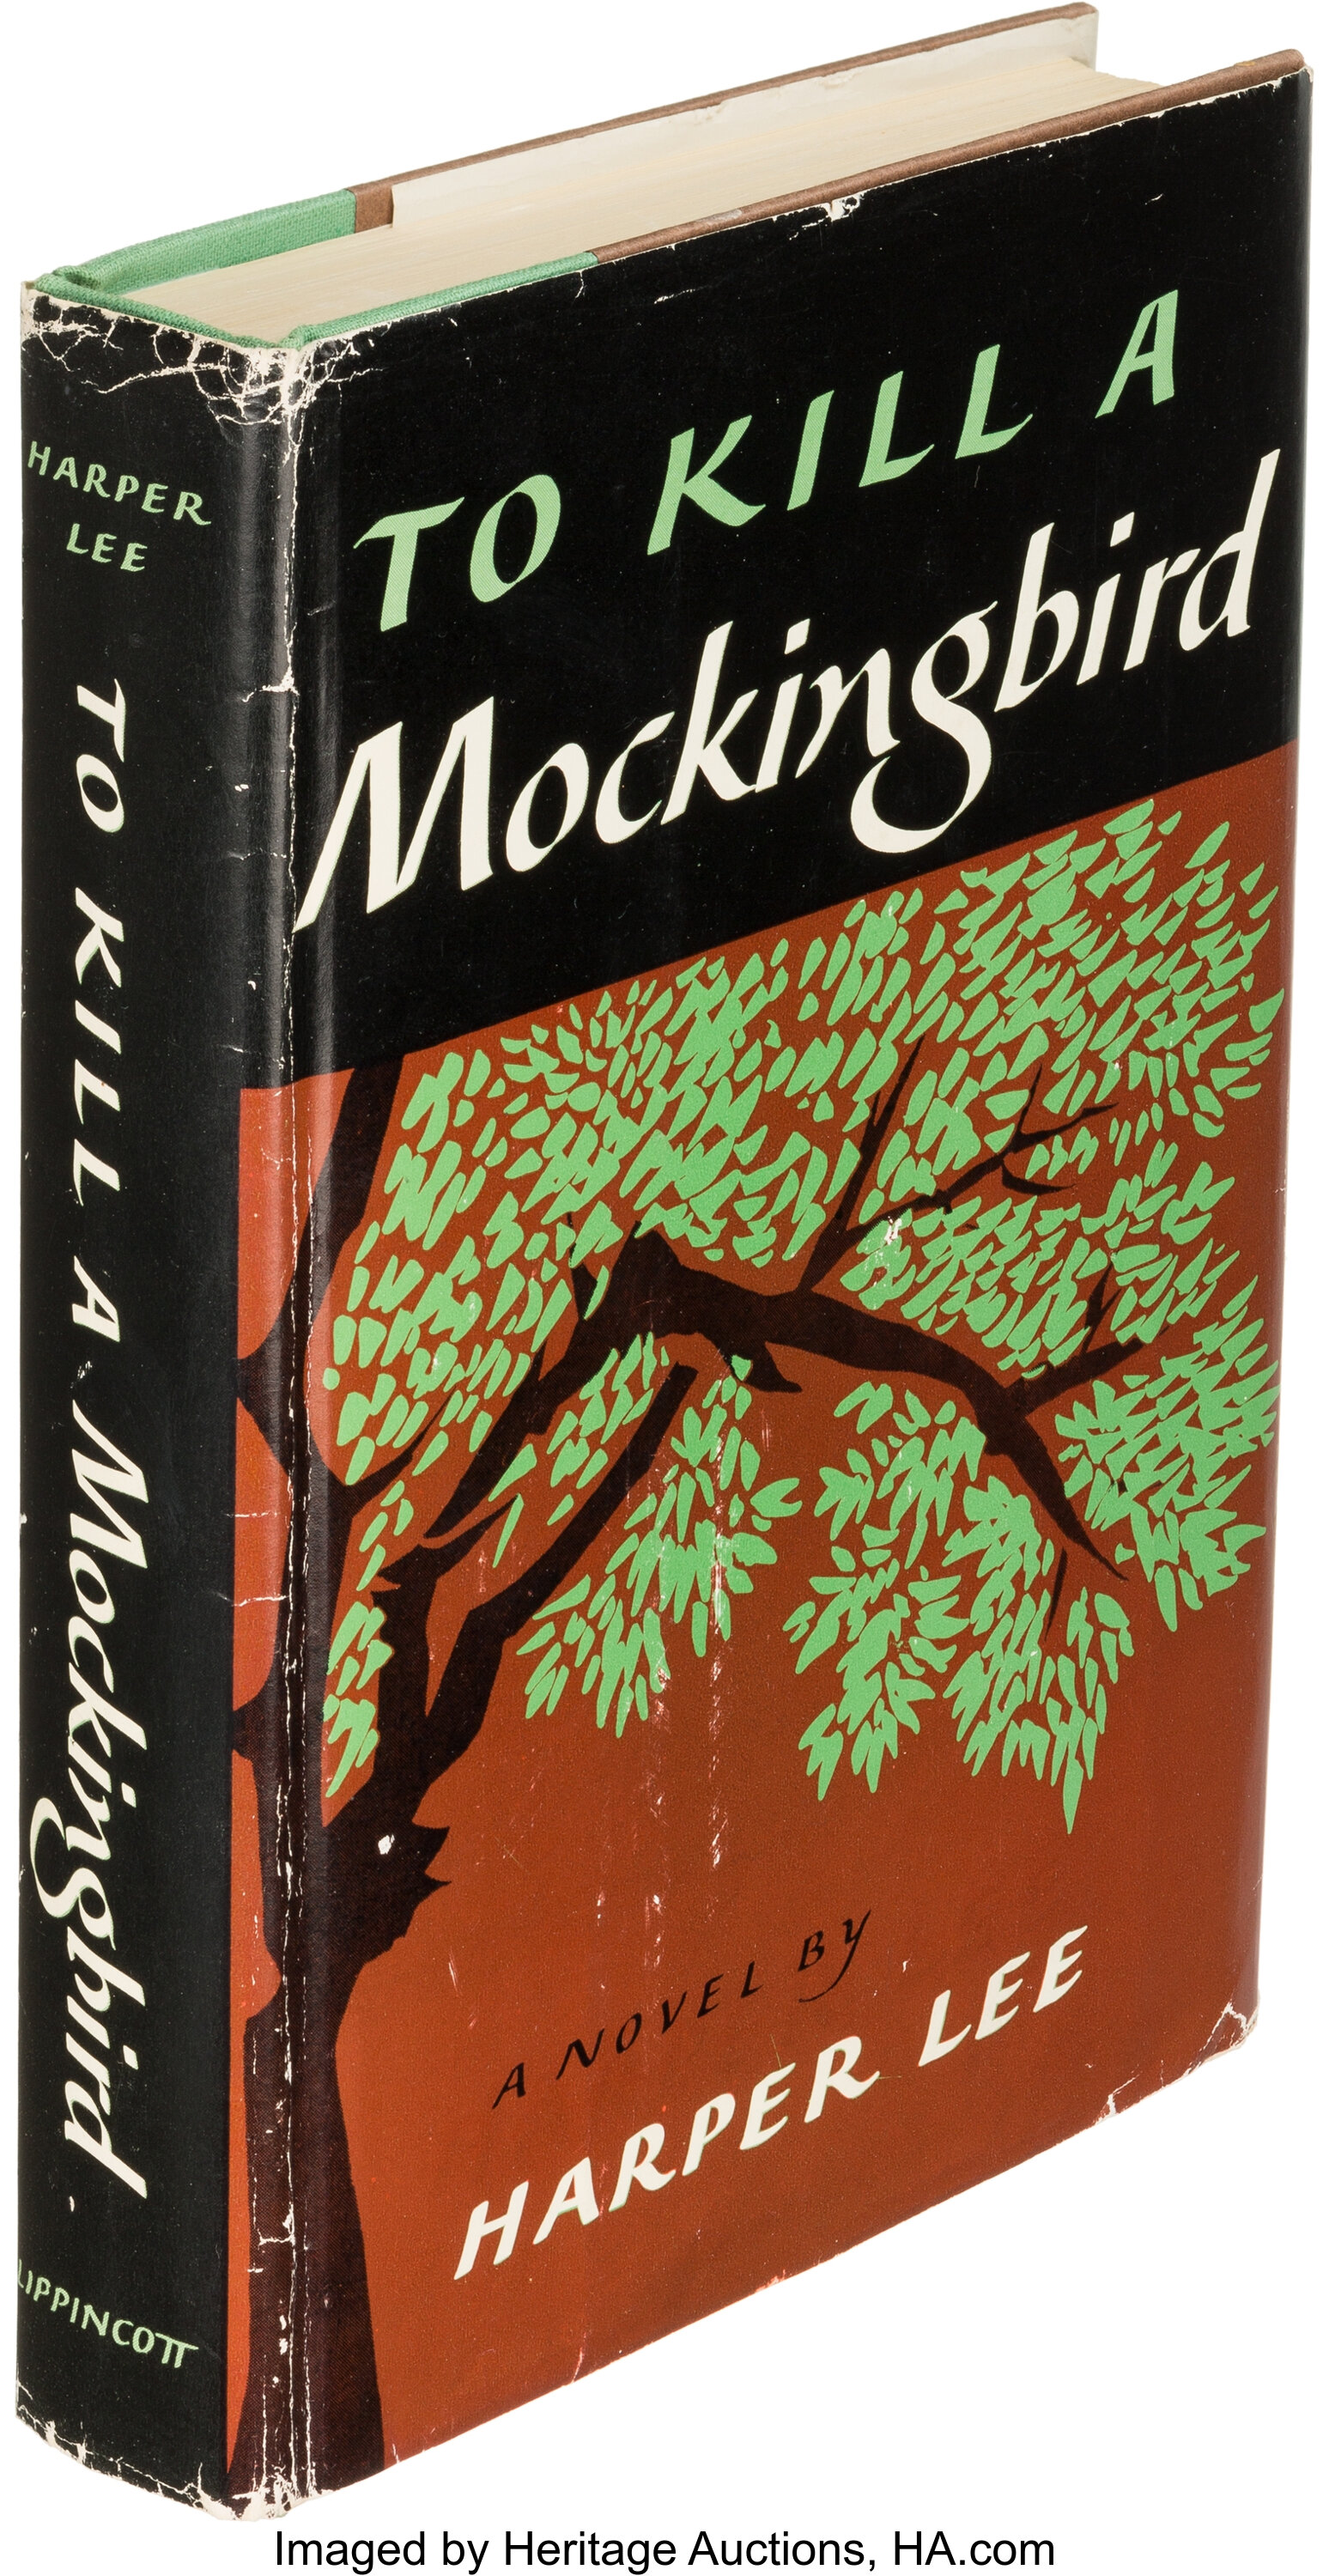 to kill a mockingbird original book cover